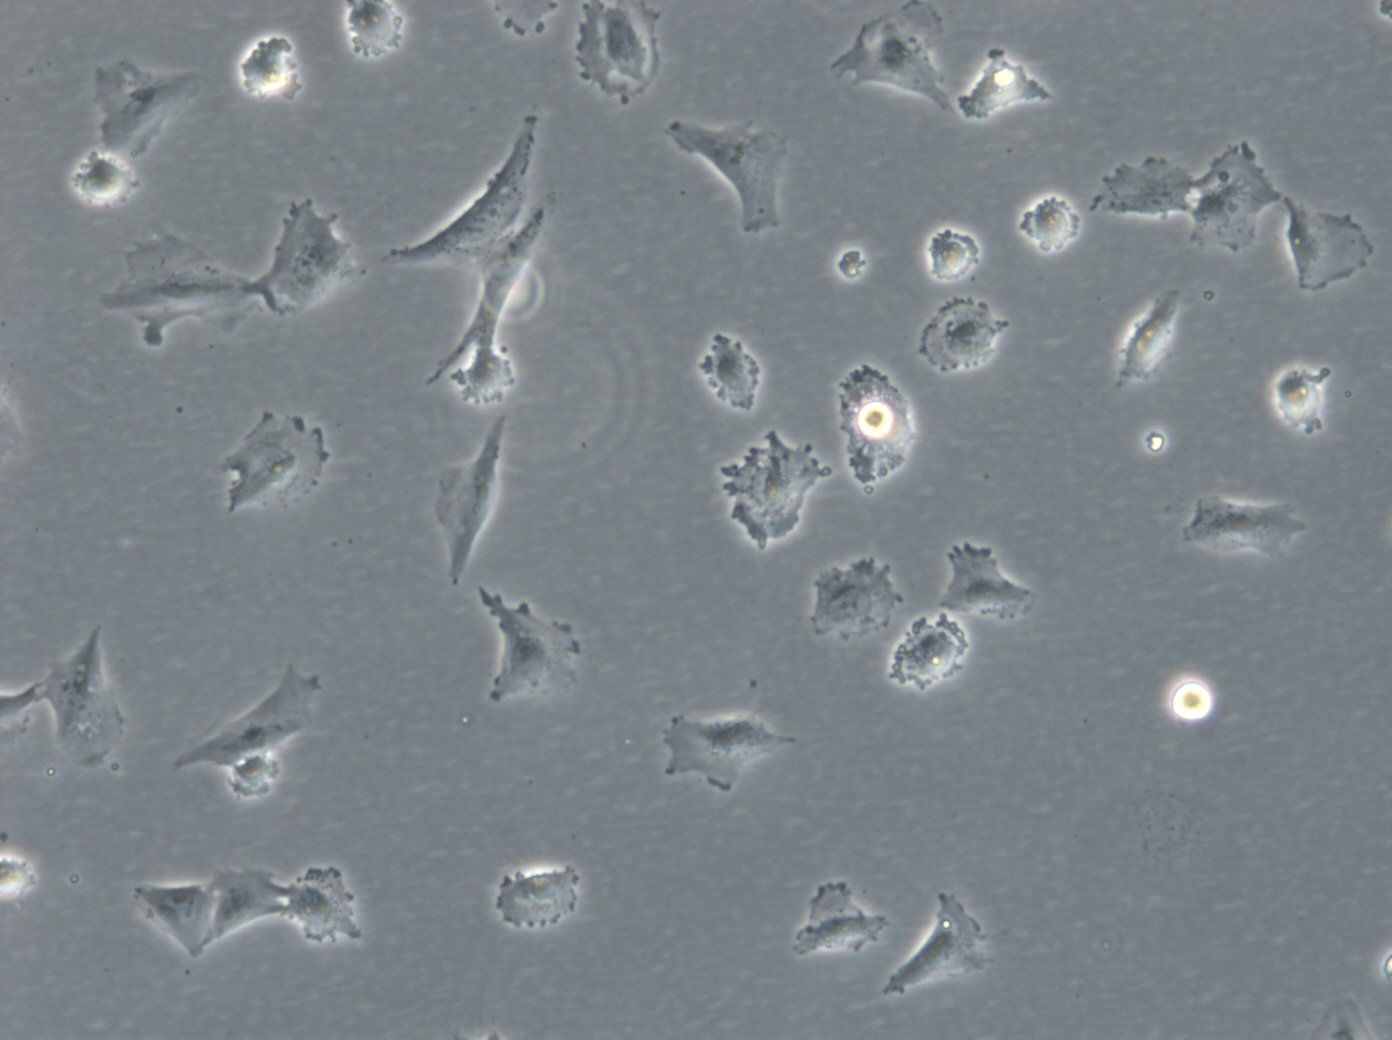 HROG17 Cells